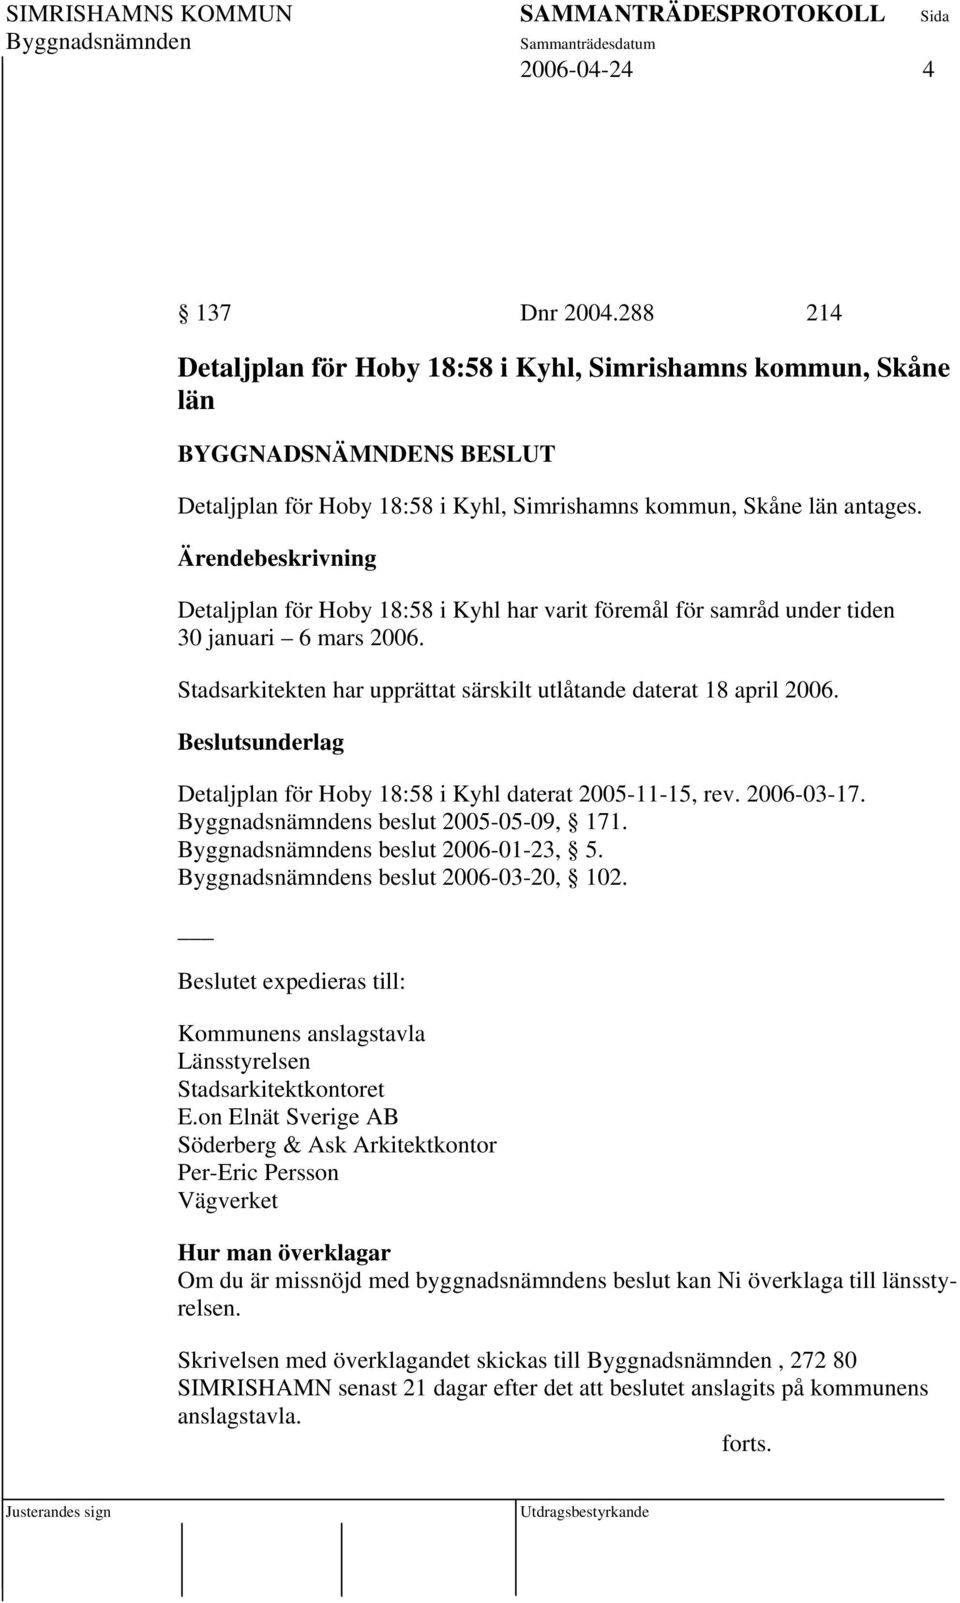 Detaljplan för Hoby 18:58 i Kyhl daterat 2005-11-15, rev. 2006-03-17. s beslut 2005-05-09, 171. s beslut 2006-01-23, 5. s beslut 2006-03-20, 102.